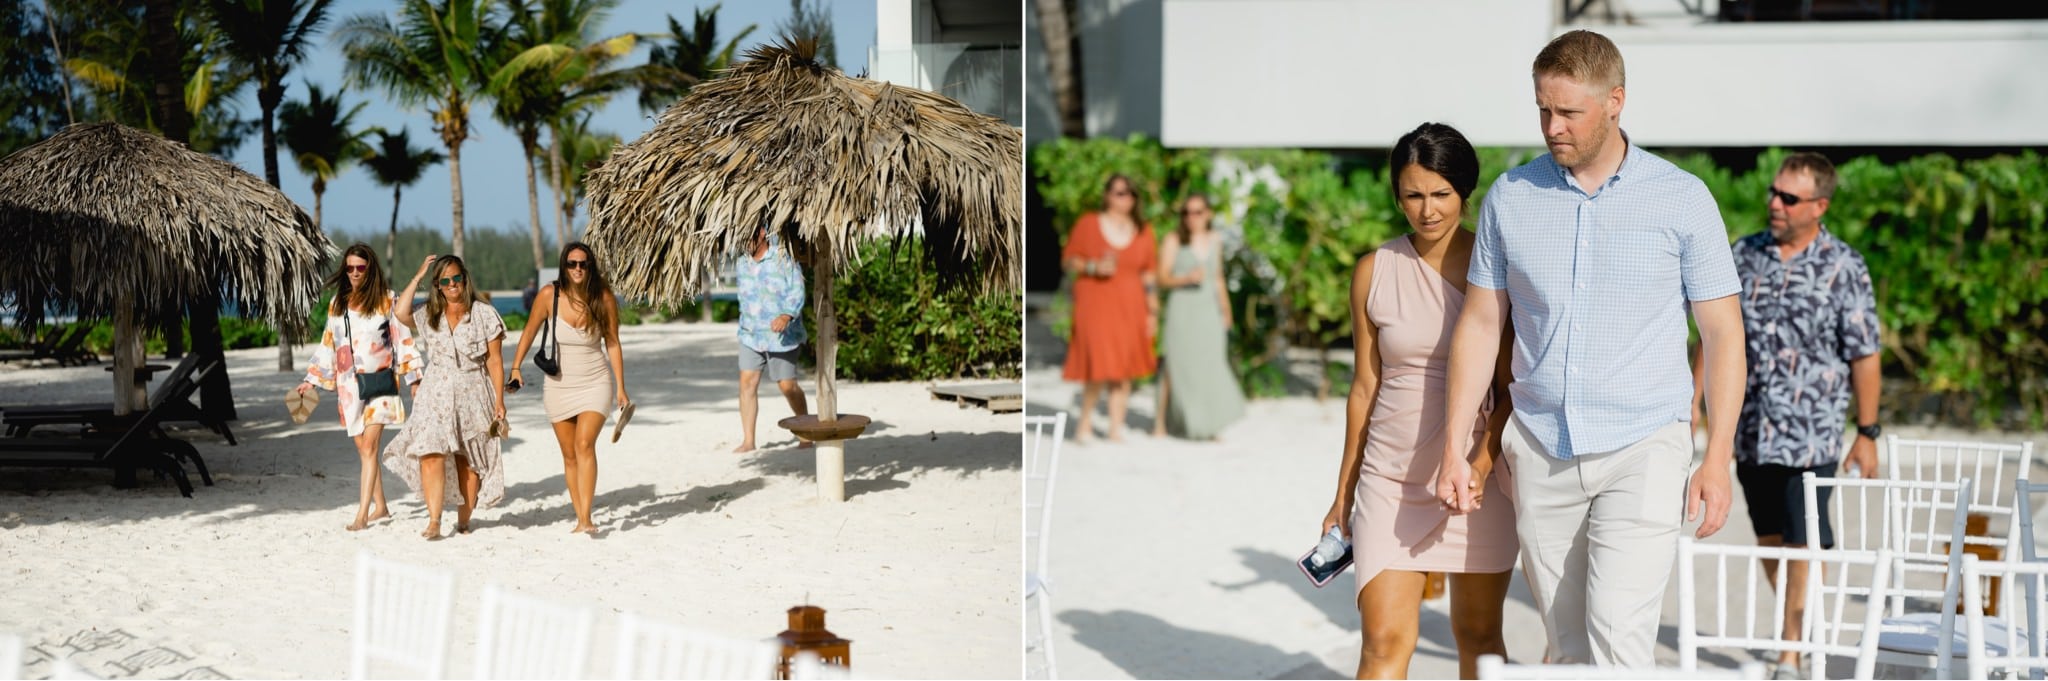 jamaica beach wedding photos